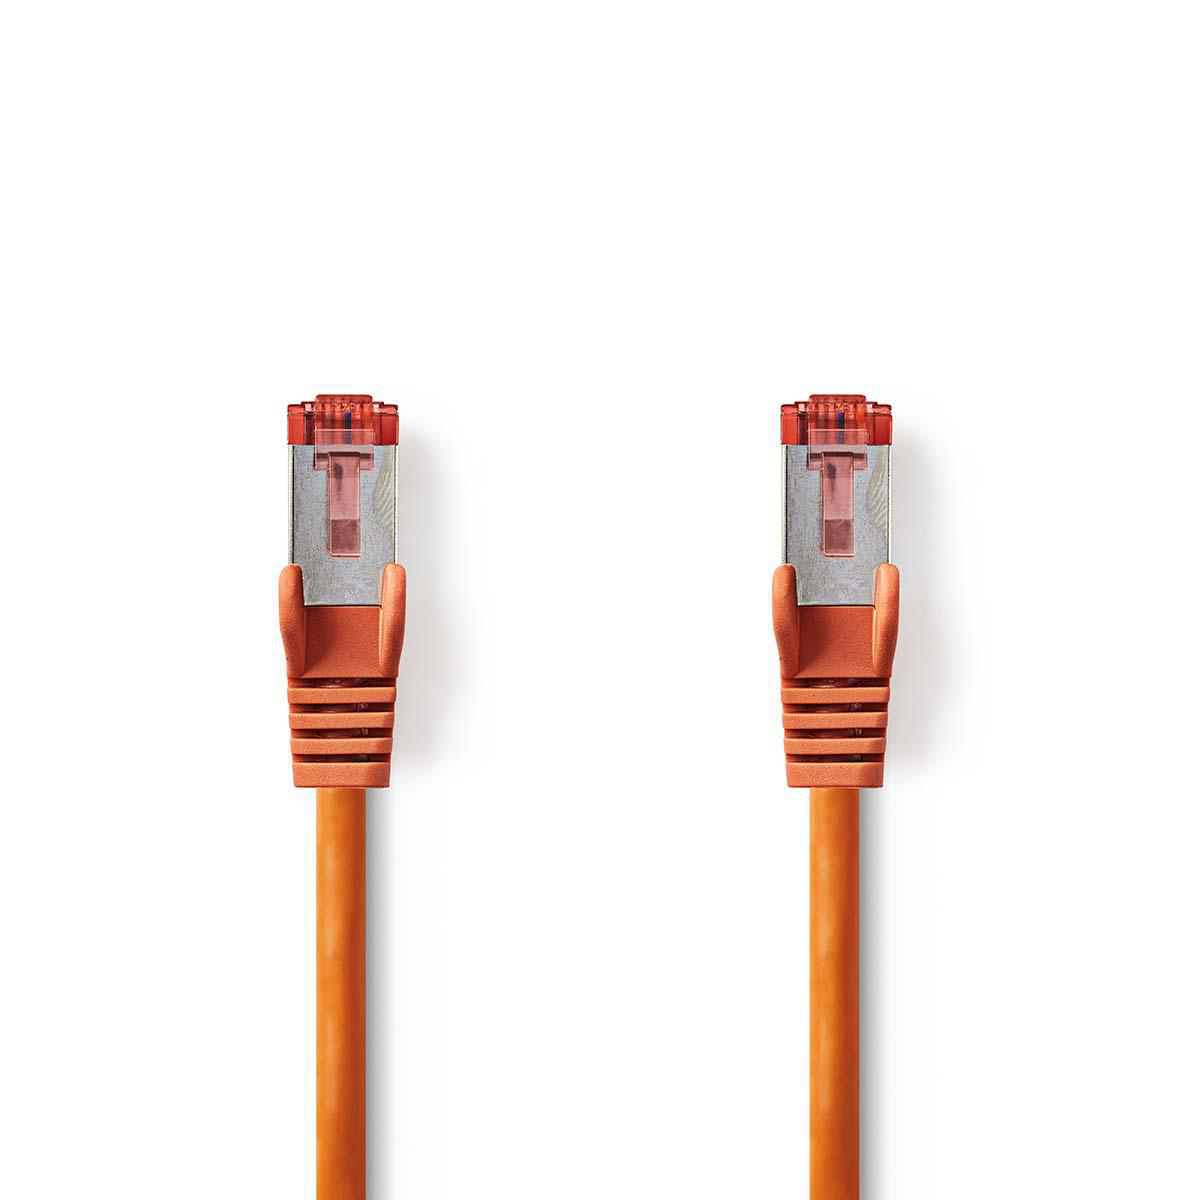 Nedis síťový kabel S/FTP CAT6, zástrčka RJ45 - zástrčka RJ45, 0.25 m, oranžová (CCGP85221OG025)